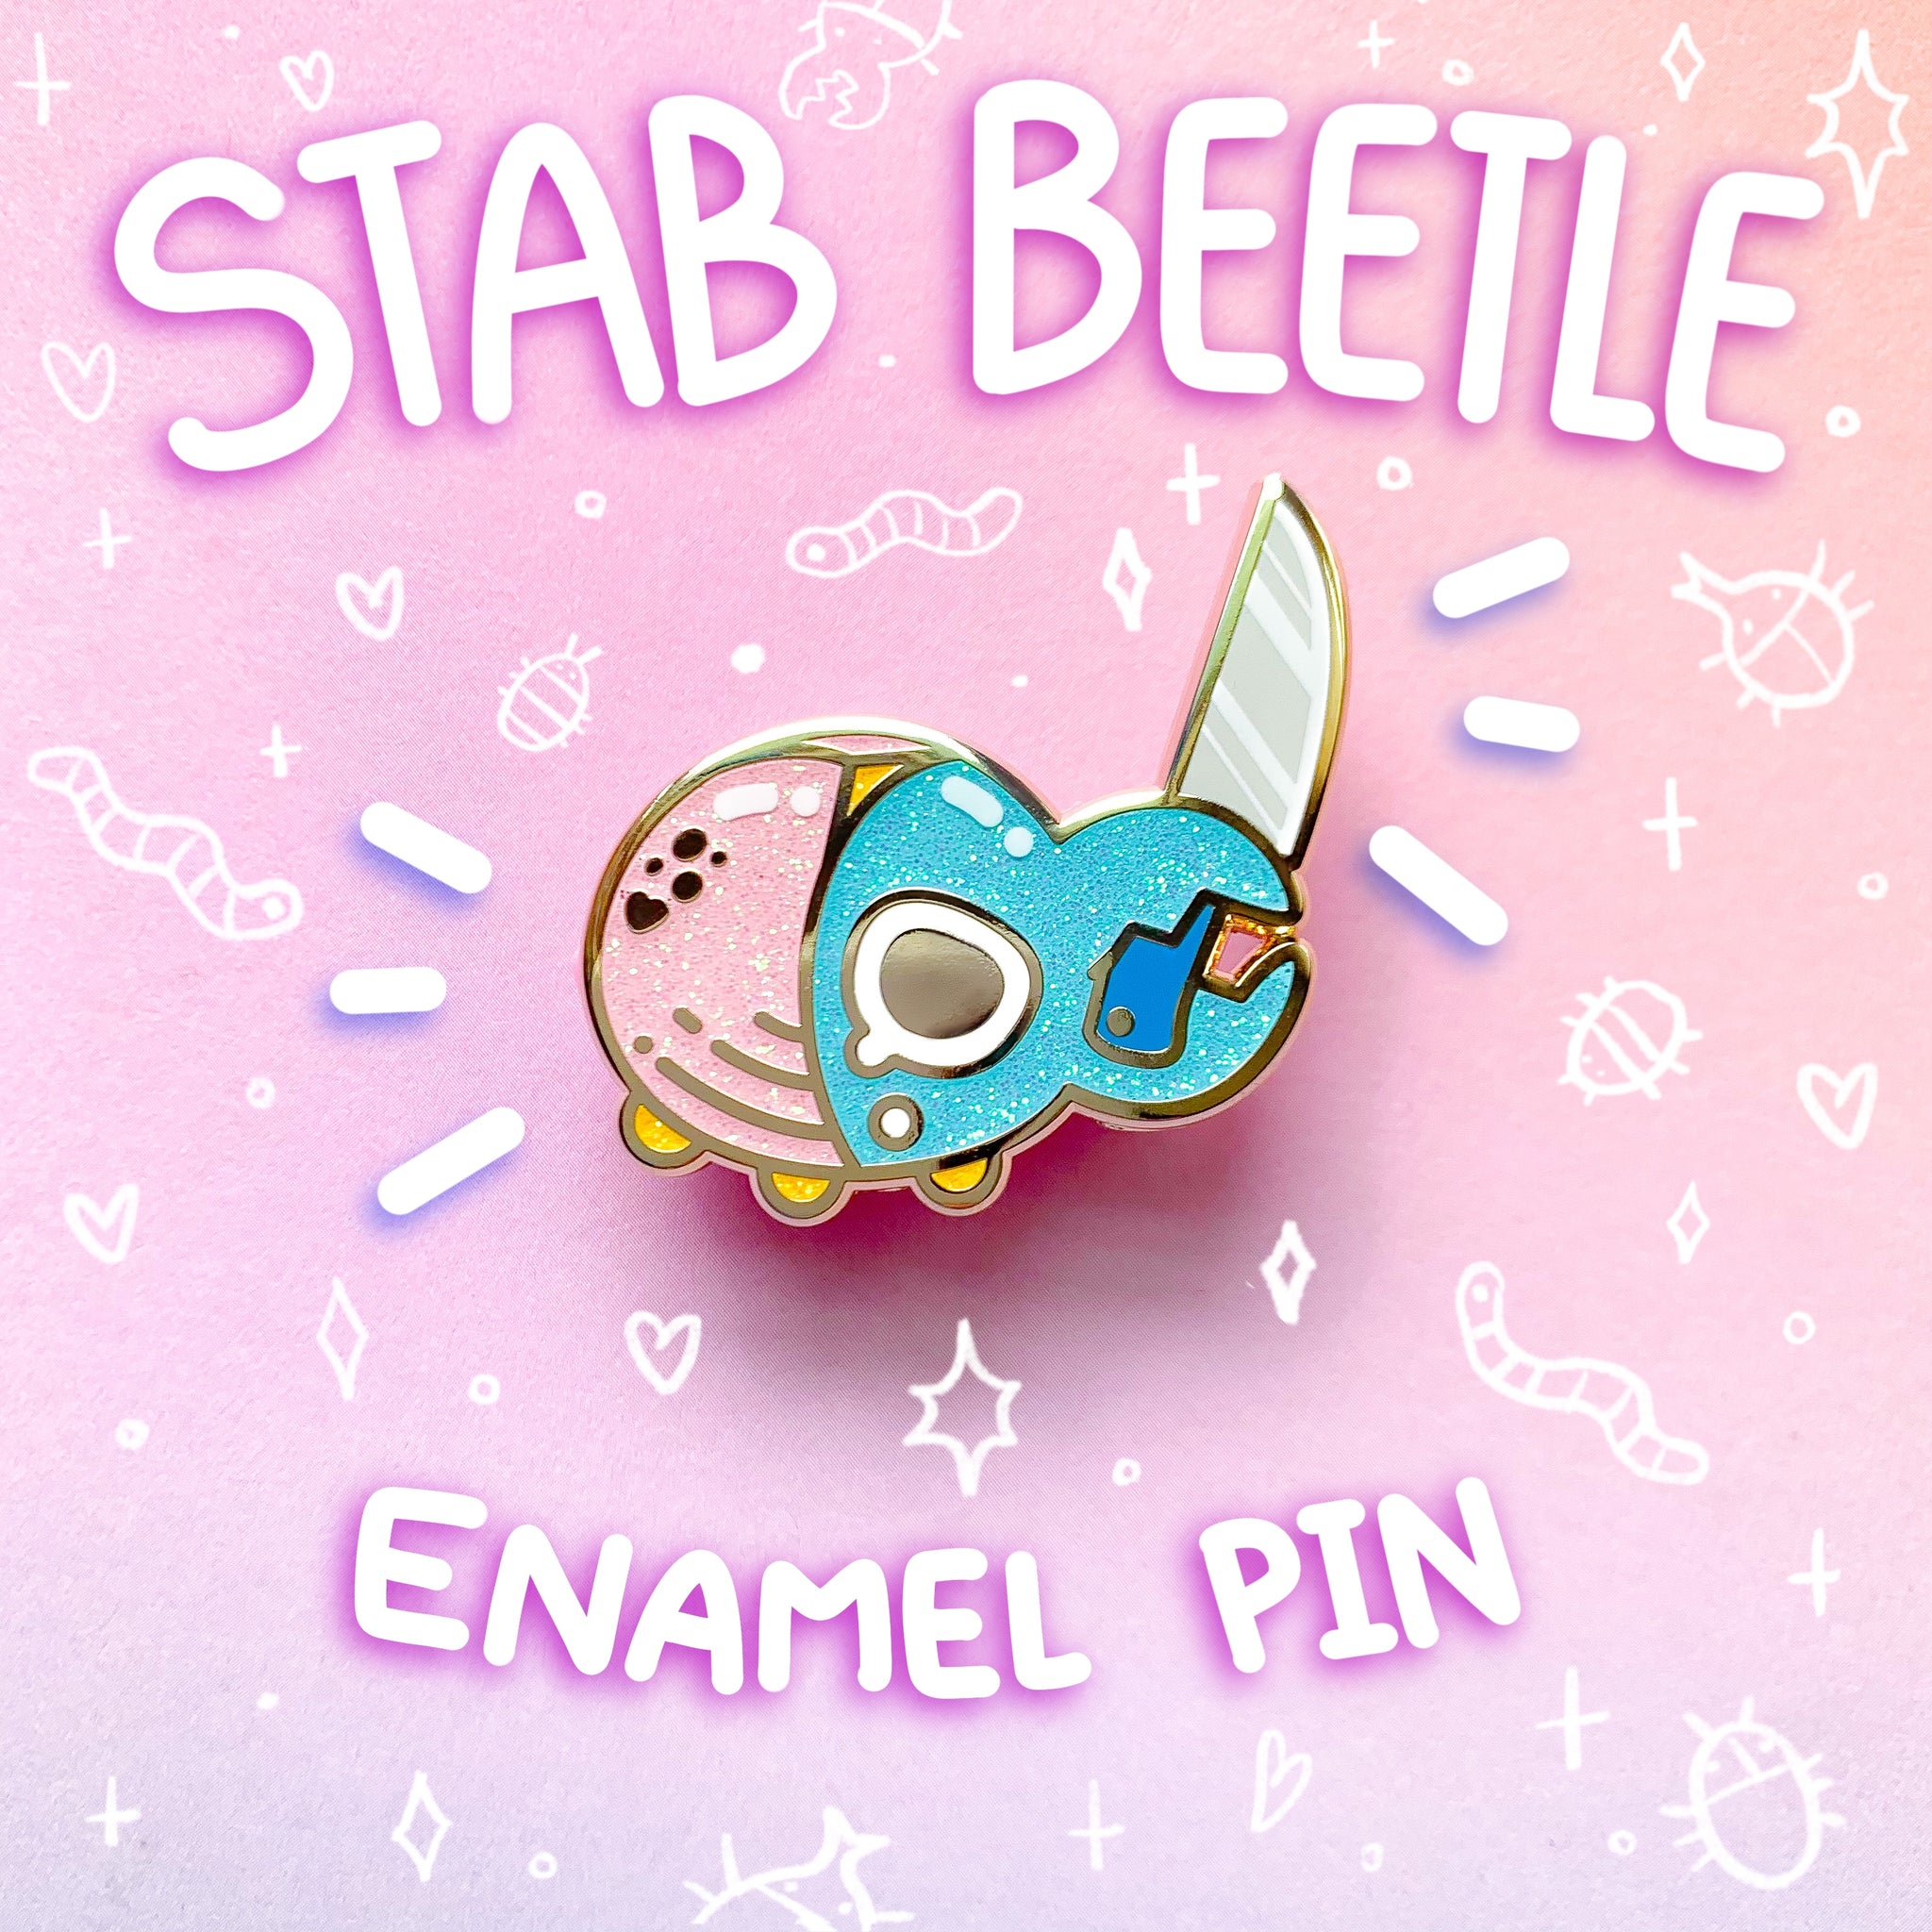 Stab Beetle Glitter Enamel Pin